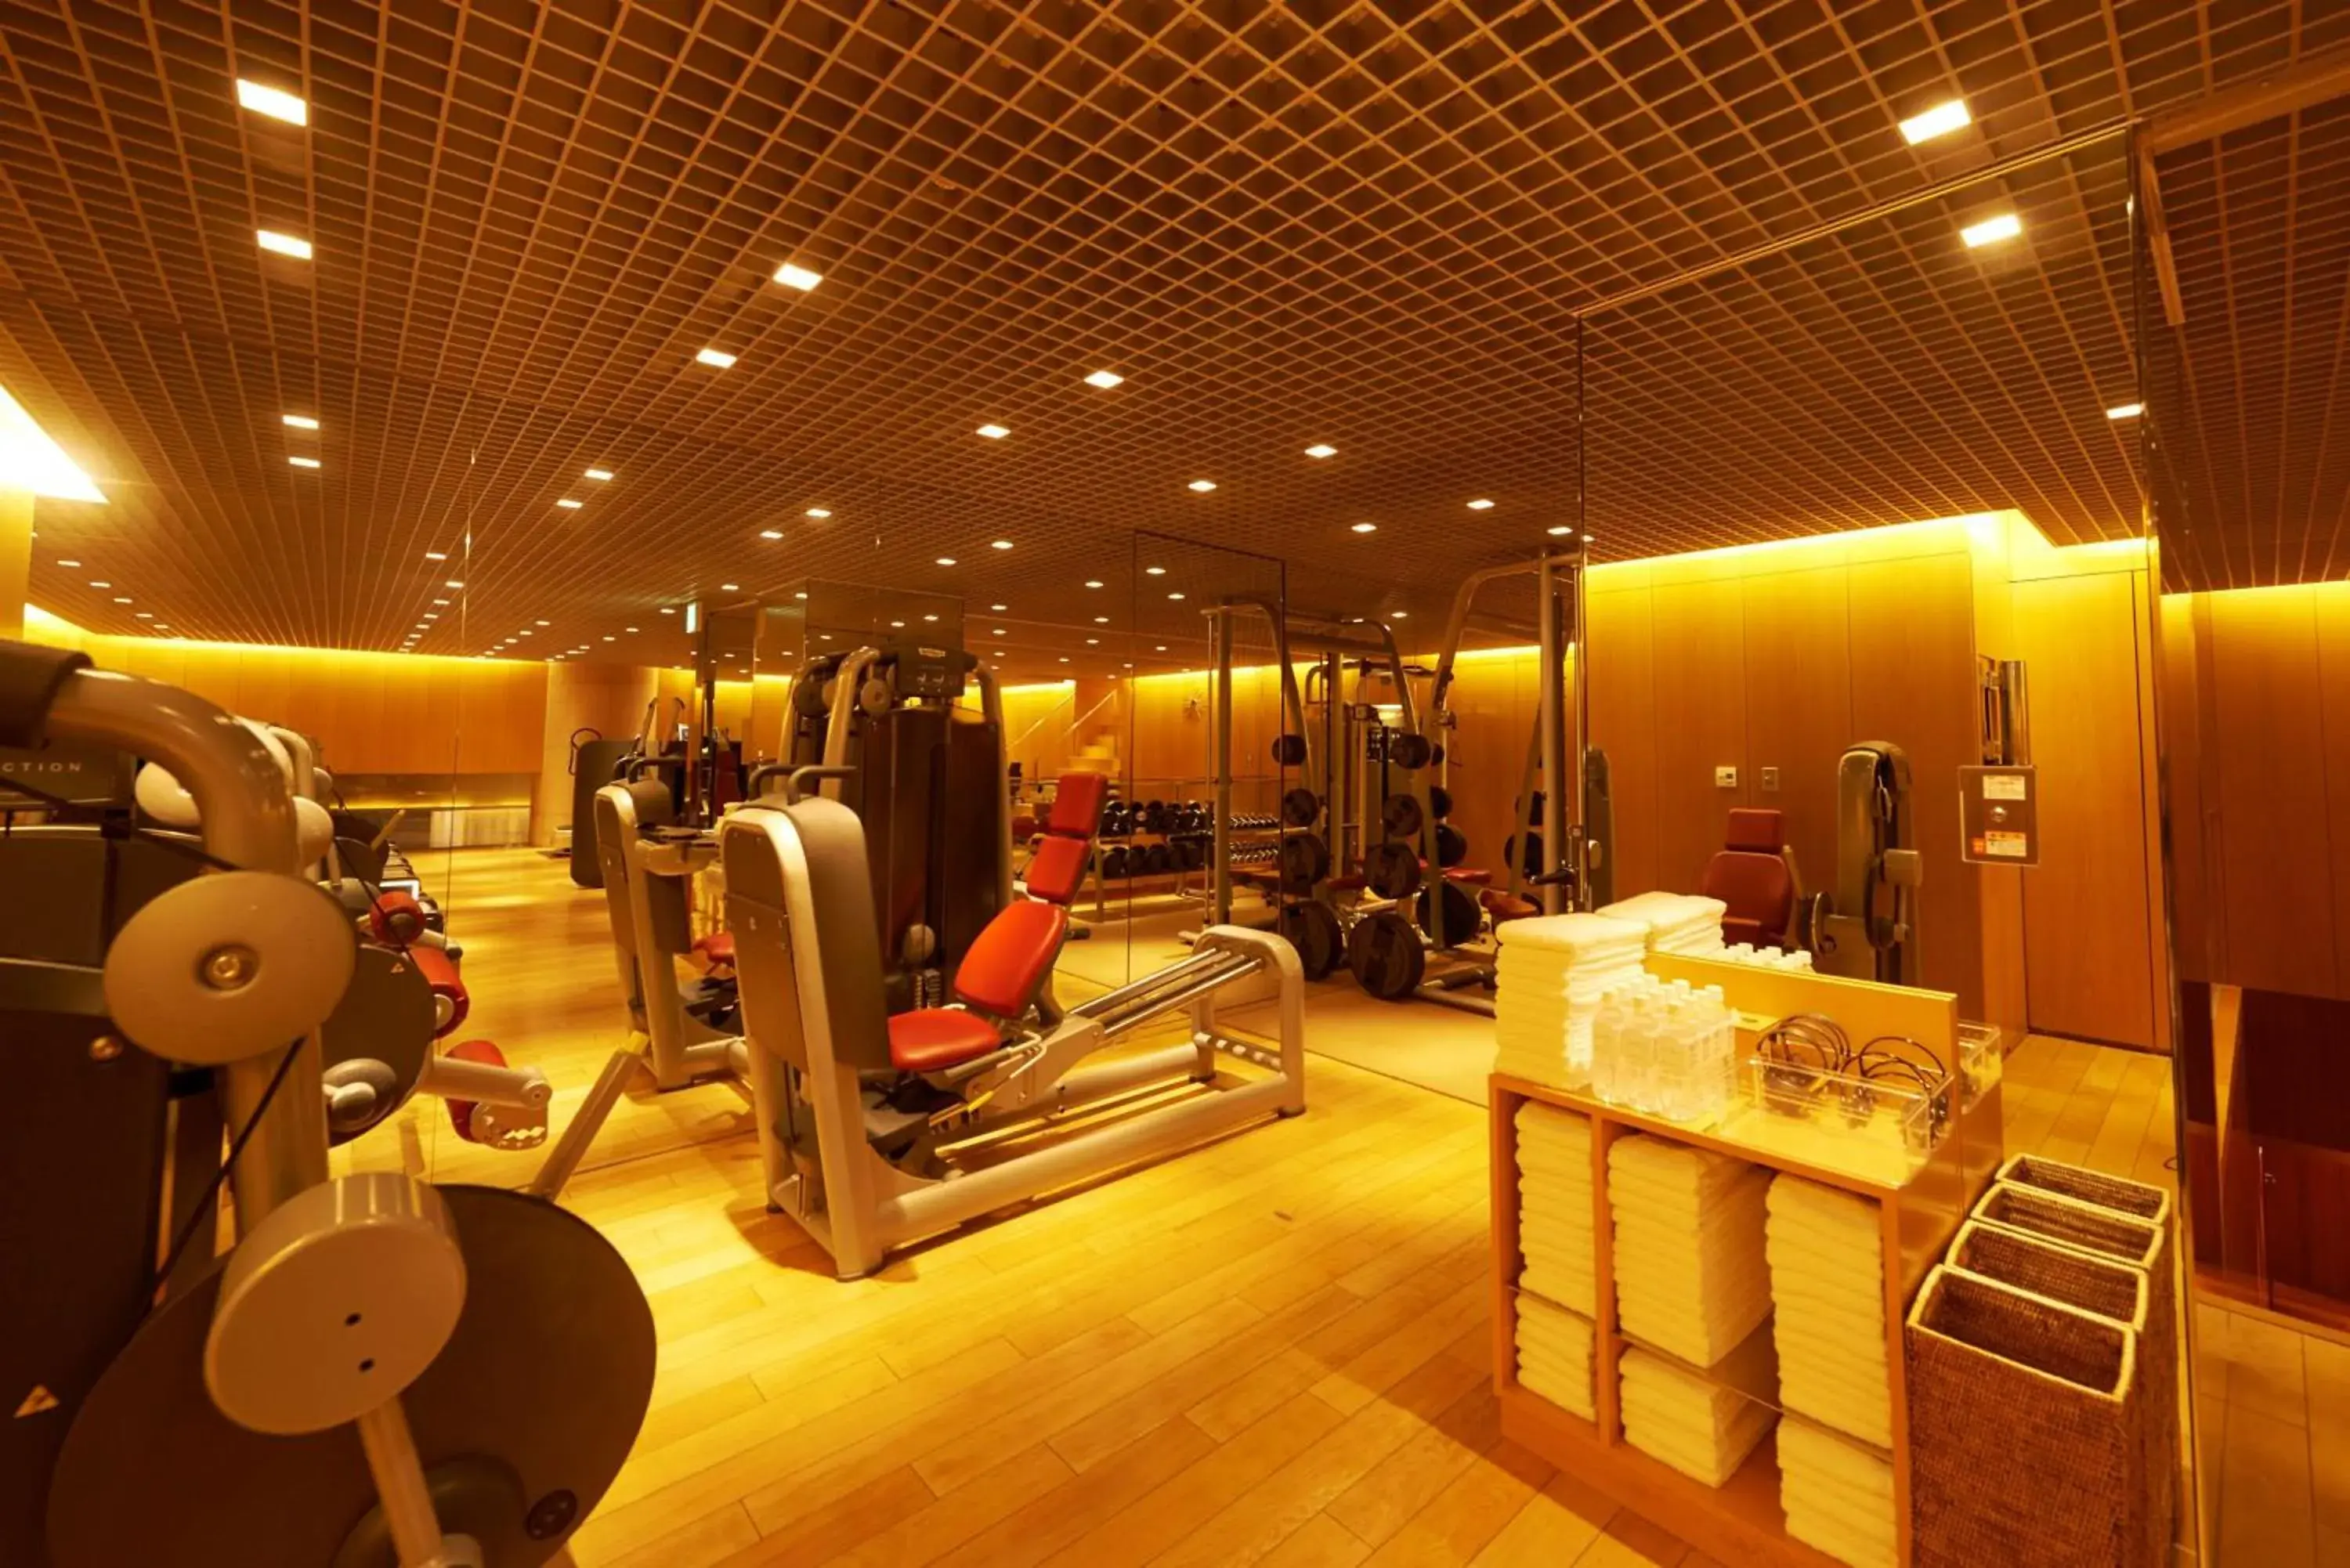 Fitness centre/facilities in Grand Hyatt Tokyo